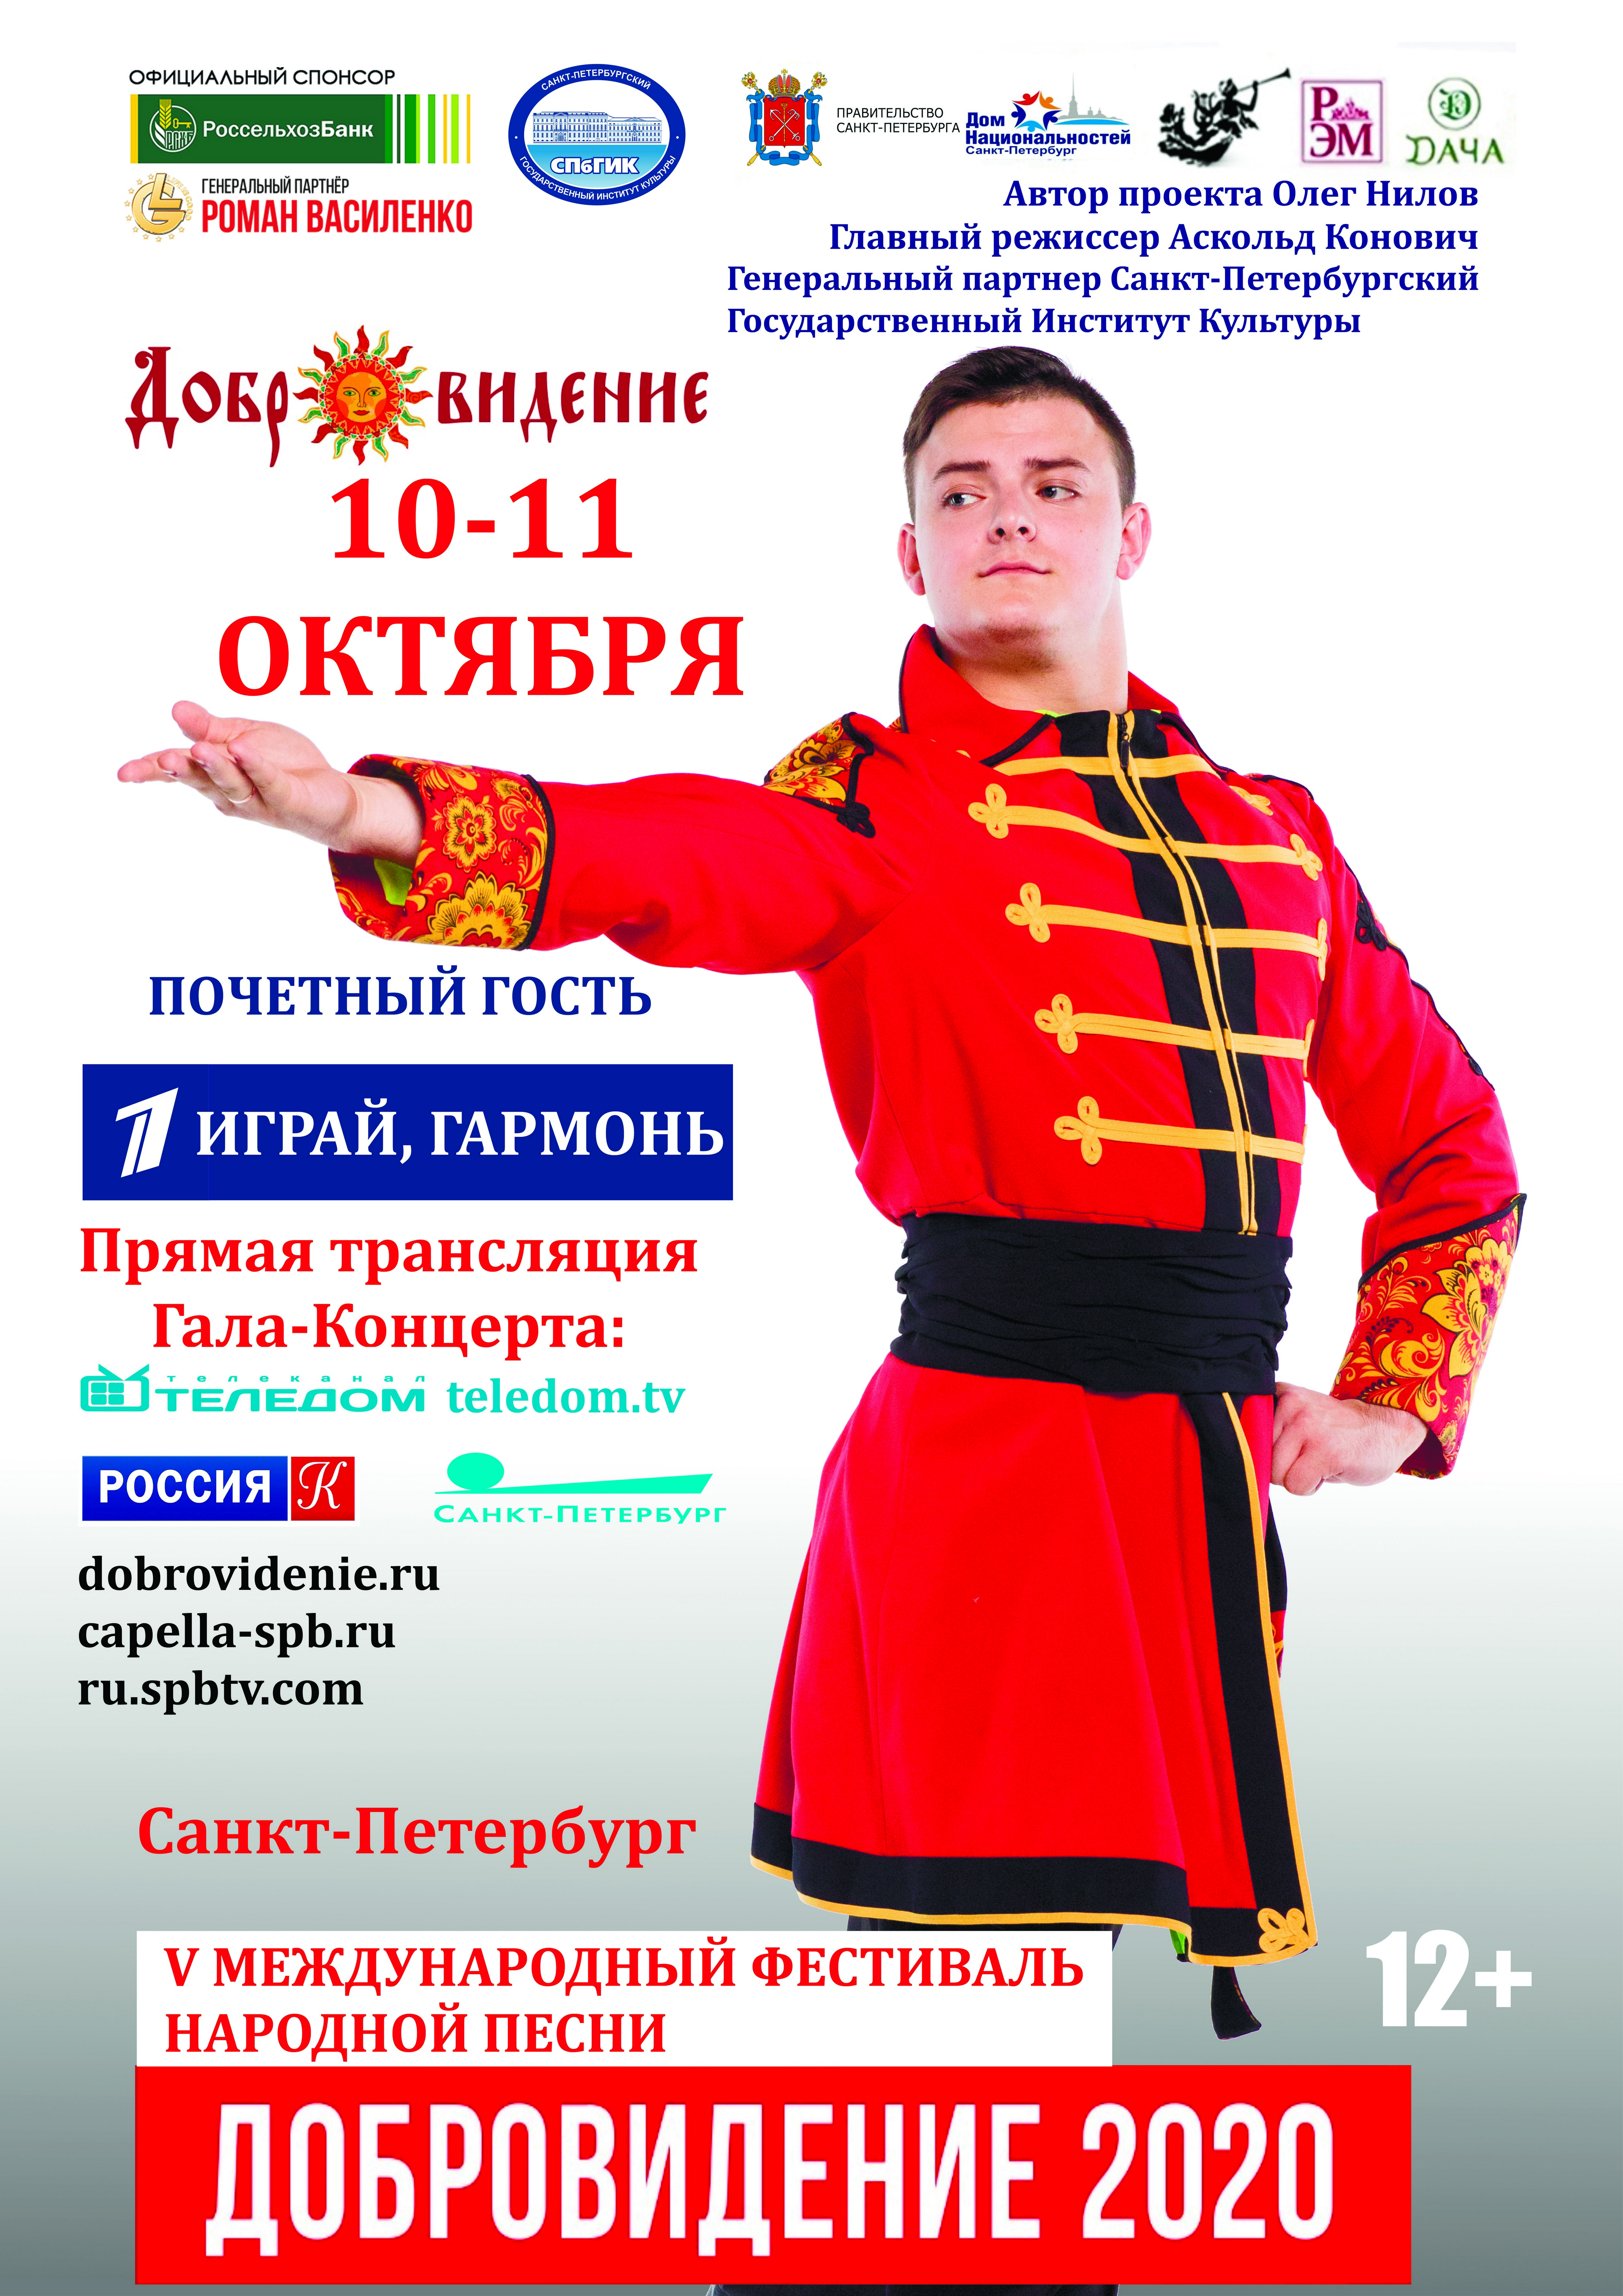 В Санкт-Петербурге пройдет V юбилейный Международный фестиваль народной песни «Добровидение».